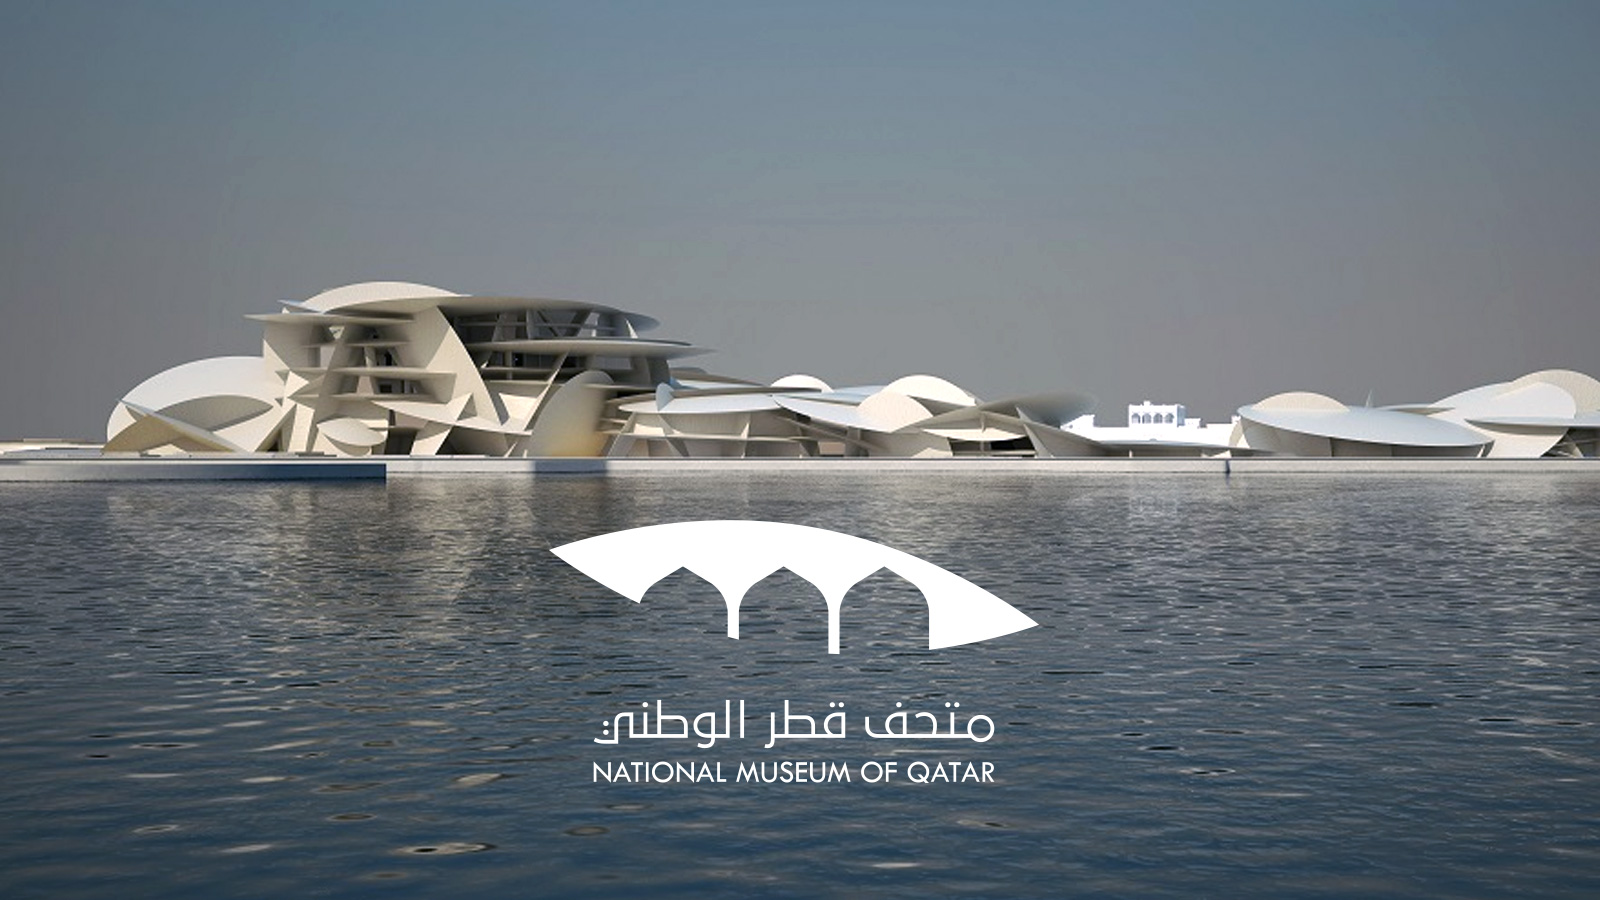 ‪متاحف قطر تطلق الهوية الجديدة لمتحف قطر الوطني‬ متاحف قطر تطلق الهوية الجديدة لمتحف قطر الوطني (الجزيرة)